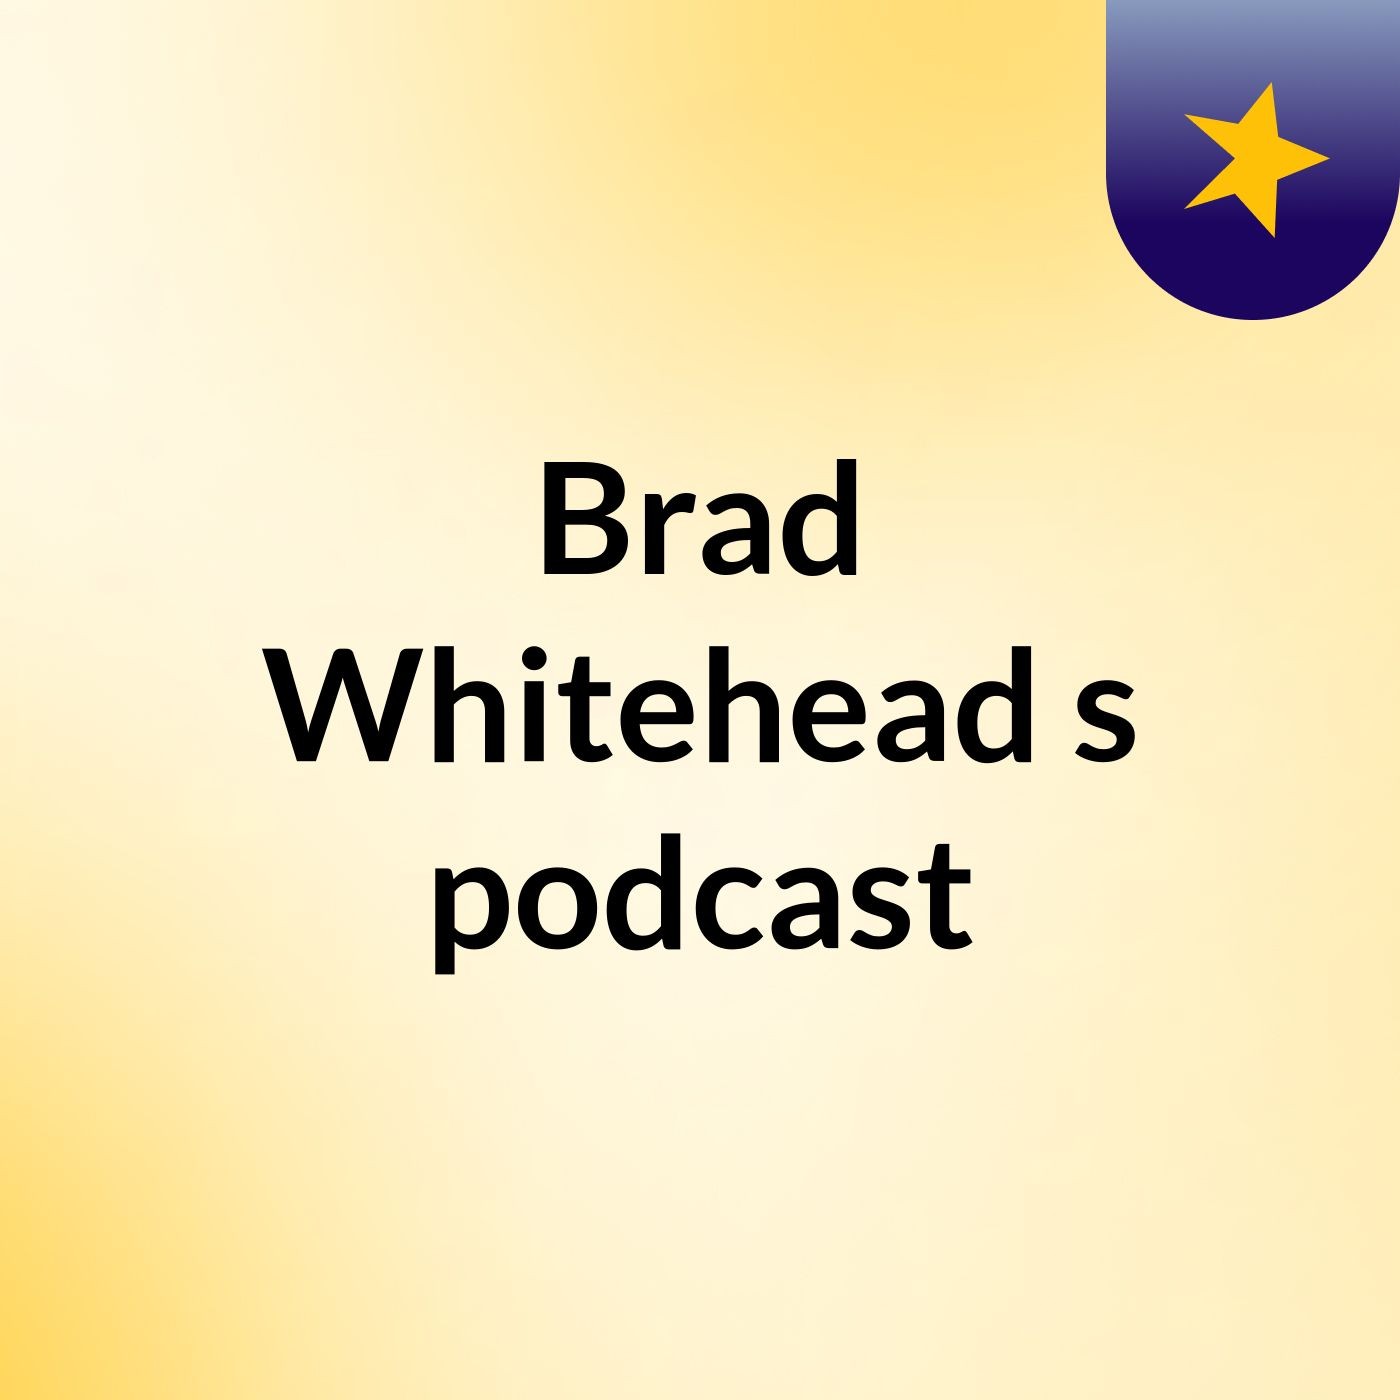 Brad Whitehead's podcast